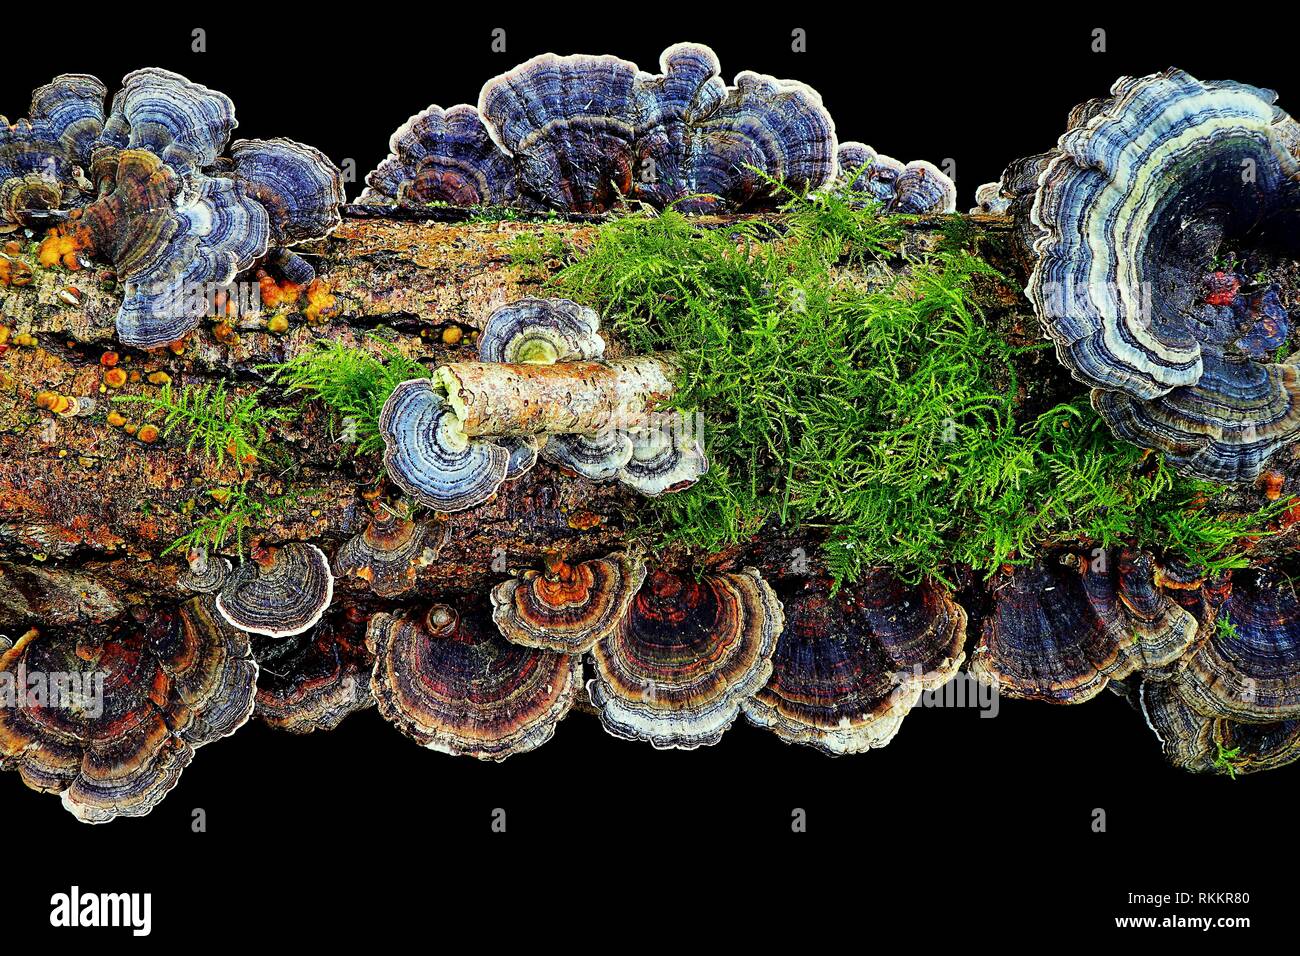 Une superbe image de la Turquie, champignon Champignons / Queue Trametes versicolor poussant sur un journal moussue, sur un fond noir. Banque D'Images